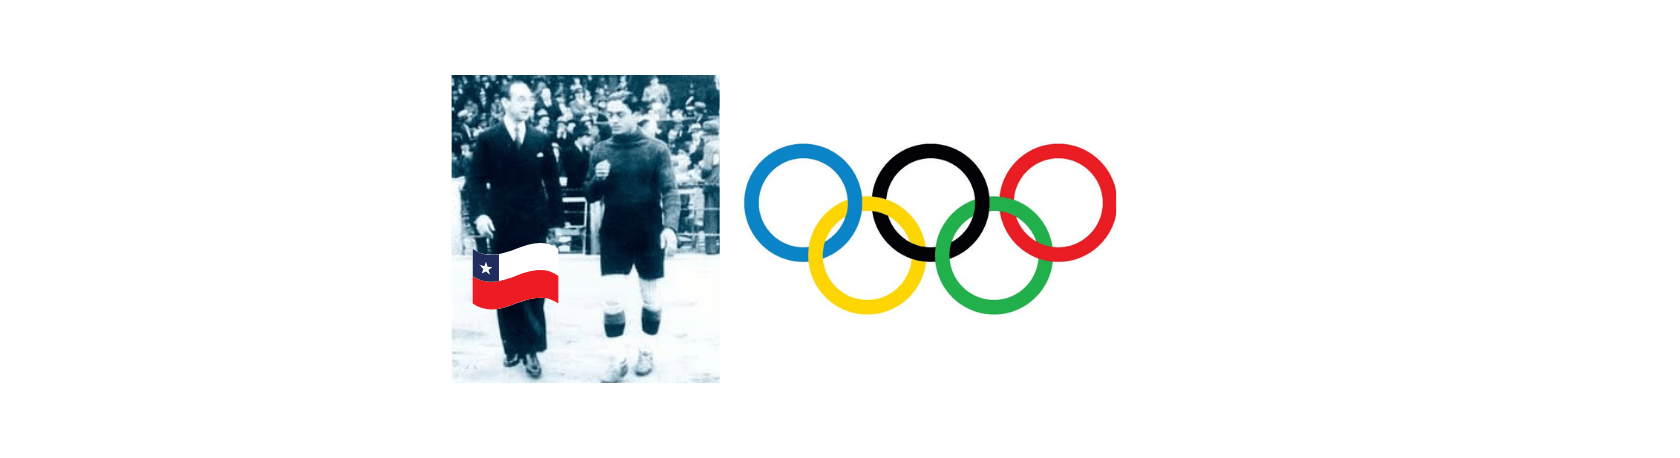 ¿Sabías que el primer atleta latinoamericano en participar de los Juegos Olímpicos era de Chile? - Easy Español